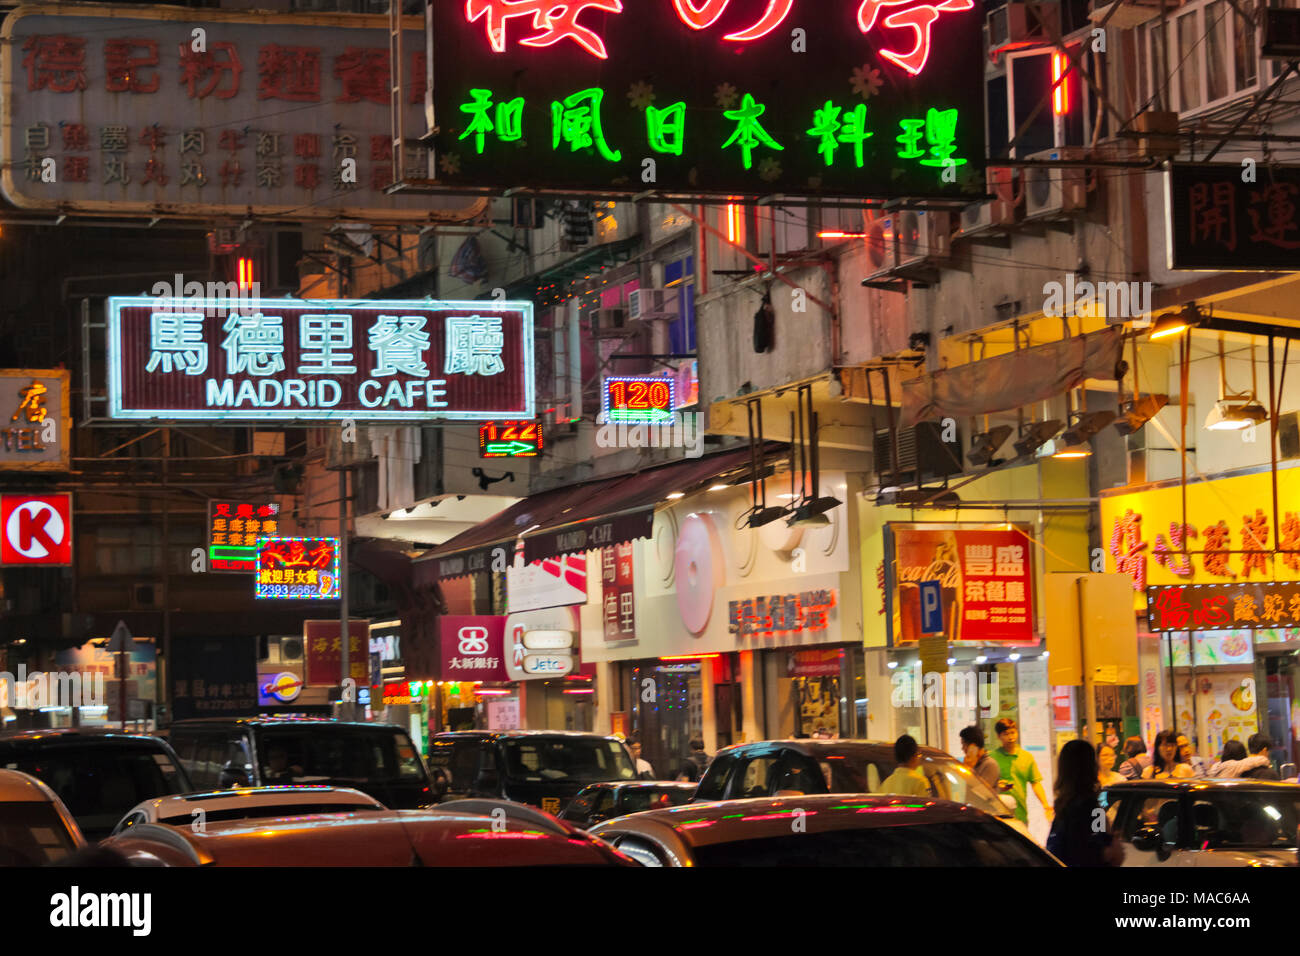 Night view of neon signs of shops, Hong Kong, China Stock Photo